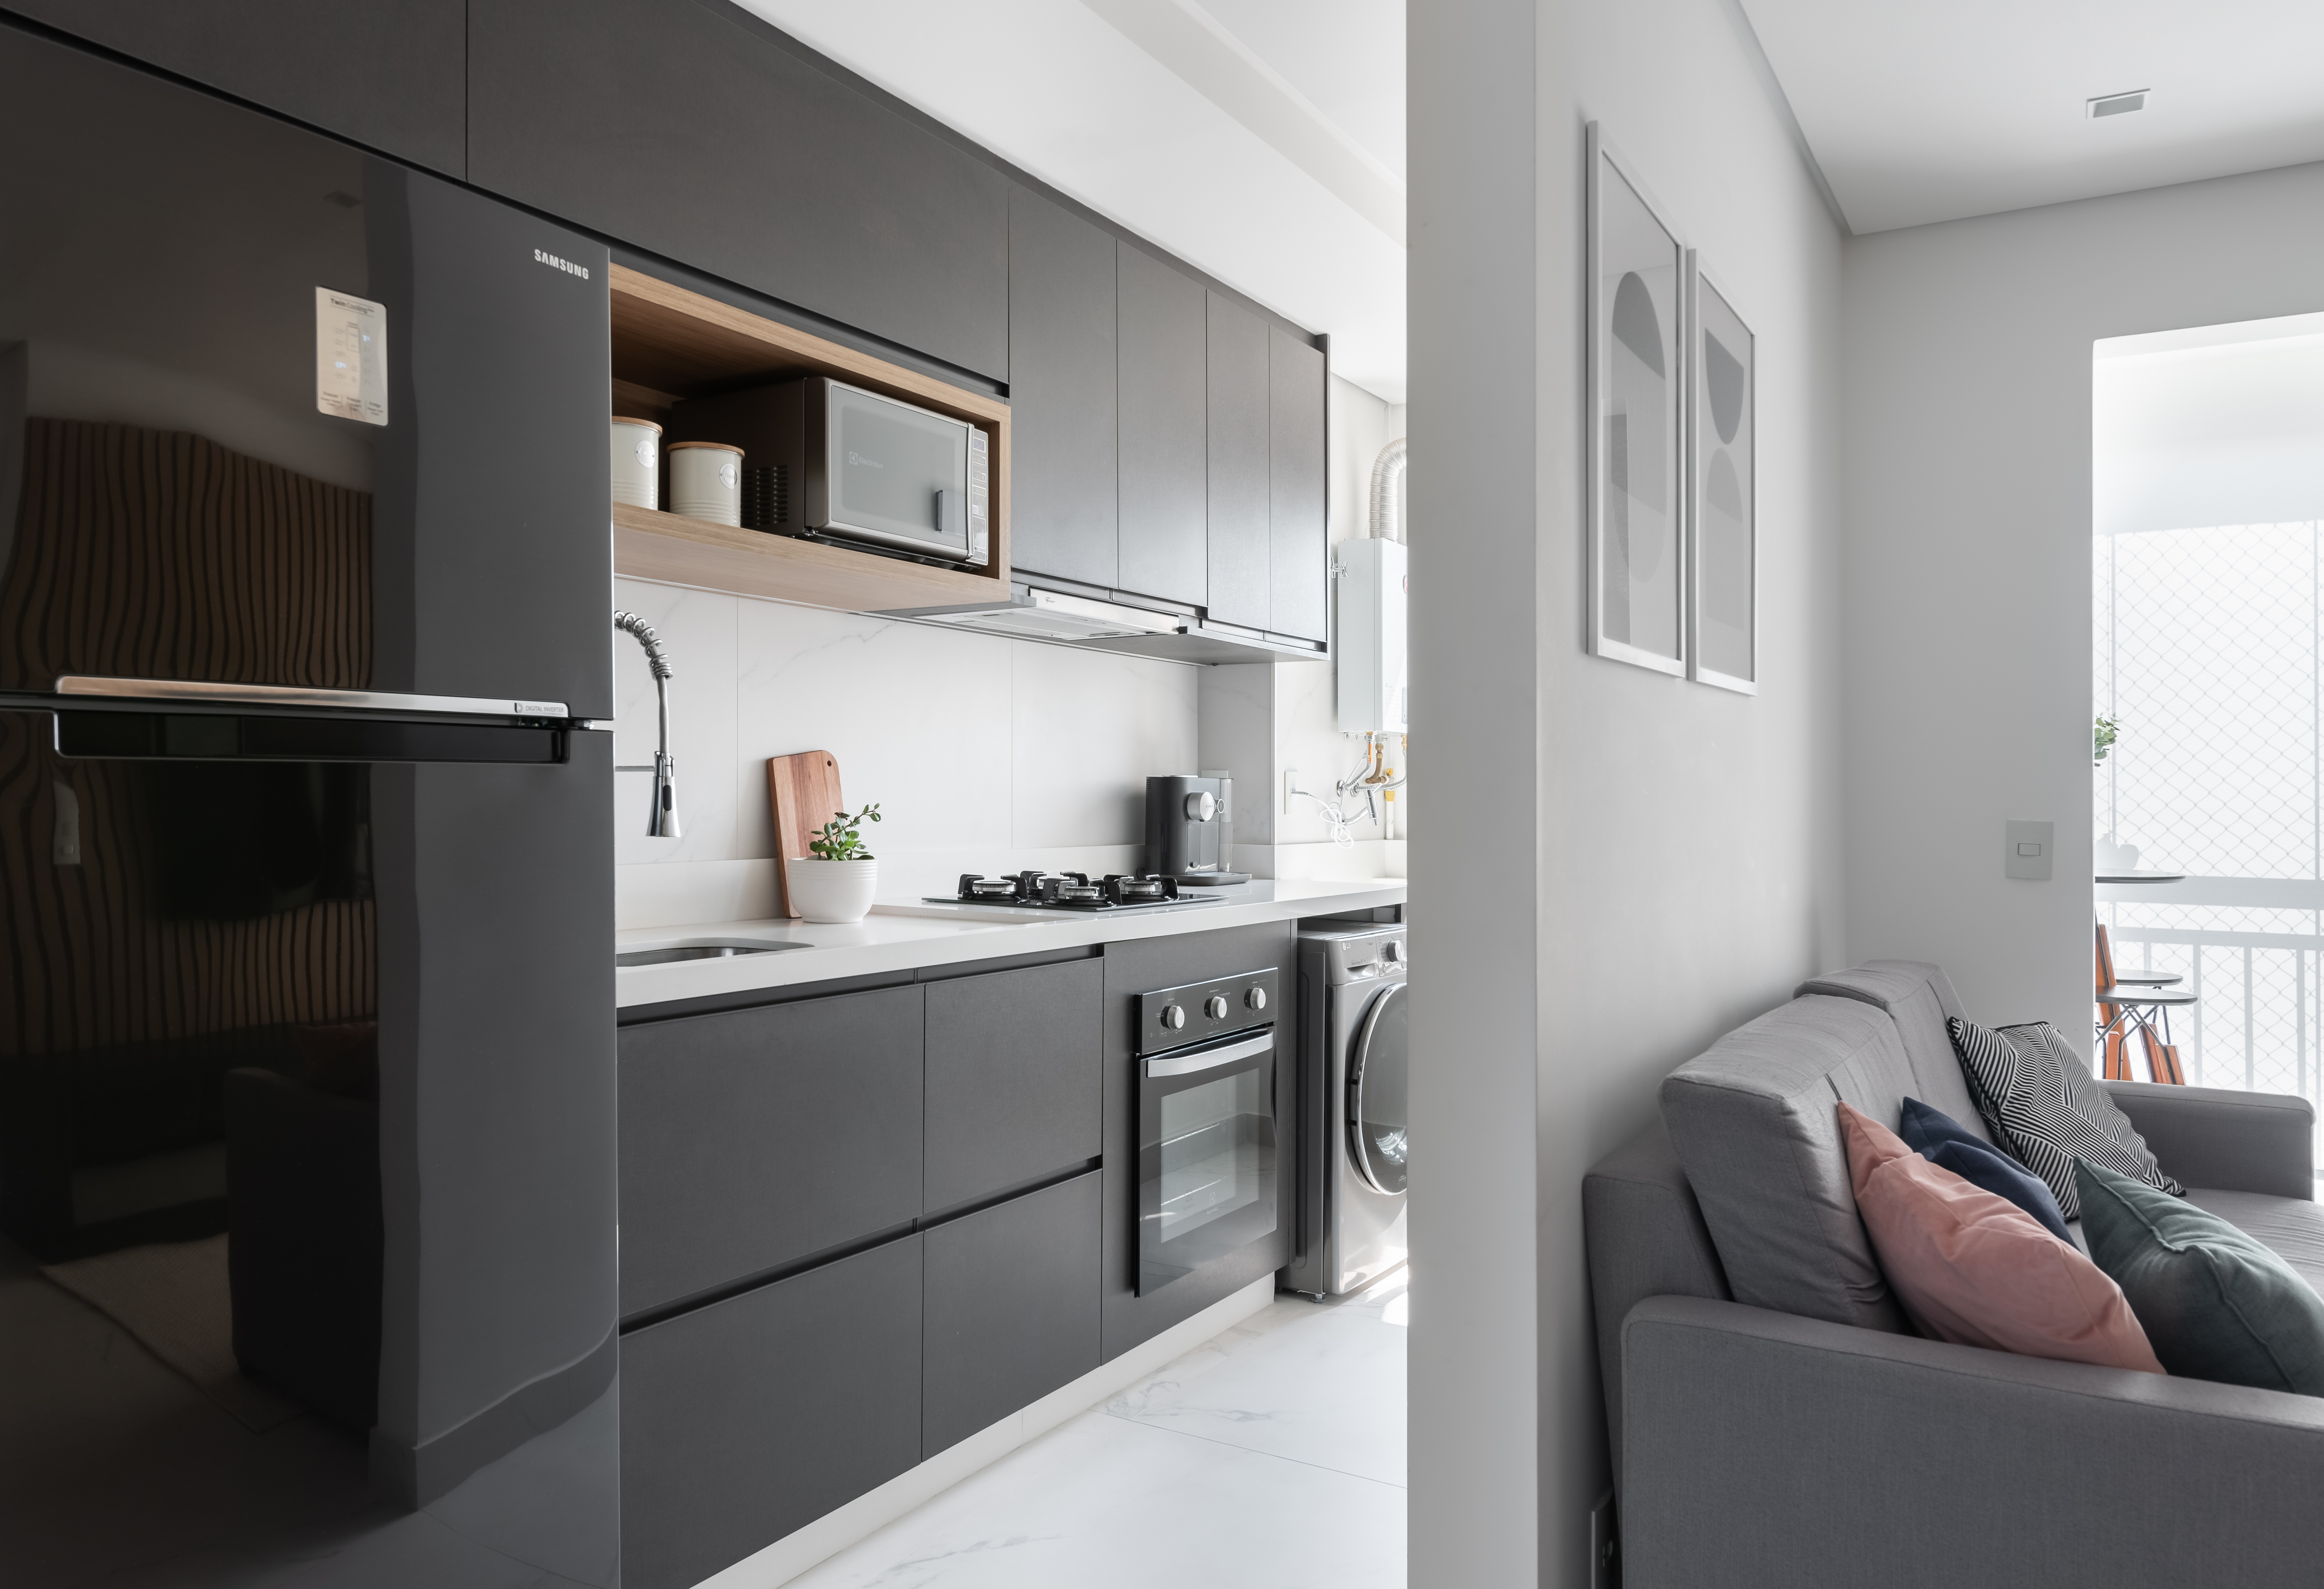  Het appartement van 50 m² heeft een minimalistische en efficiënte inrichting